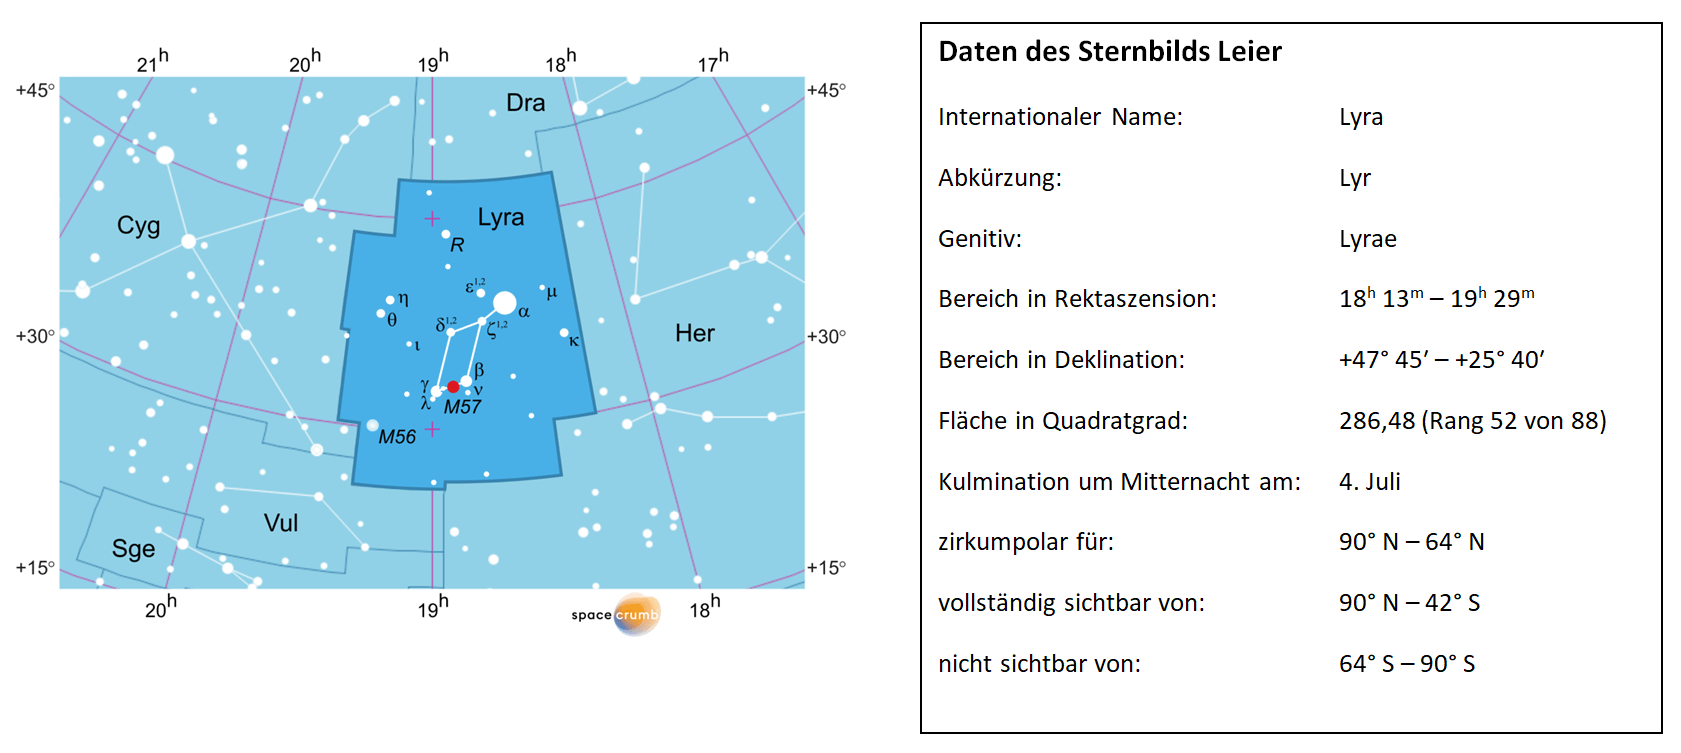 Links zeigt eine mit Koordinaten versehene Karte eines Himmelsausschnitts weiße Sterne auf hellblauem Hintergrund. Die Fläche, die das Sternbild Leier einnimmt, ist dunkelblau hervorgehoben. Eine Tabelle rechts gibt wichtige Daten des Sternbilds an.